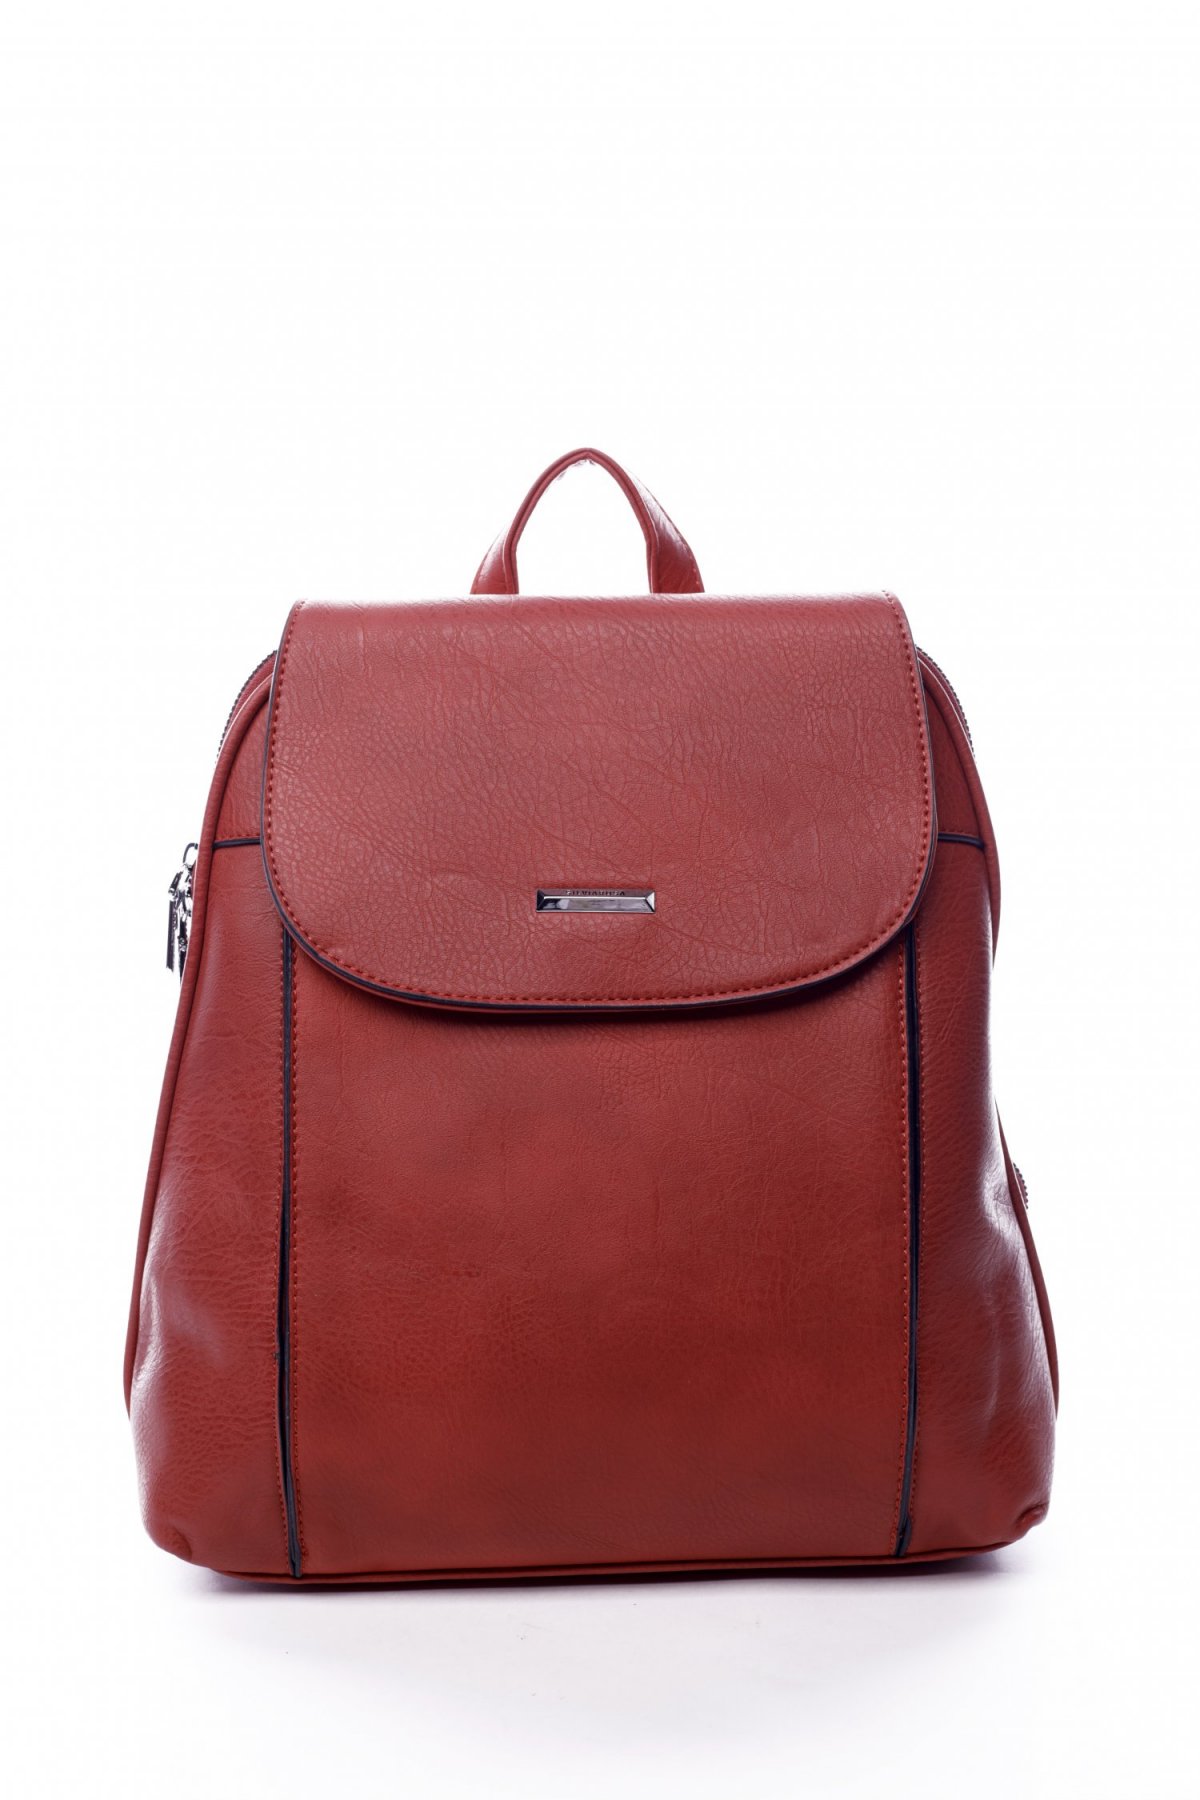 Dámský městský batoh kabelka červený - Silvia Rosa Polan